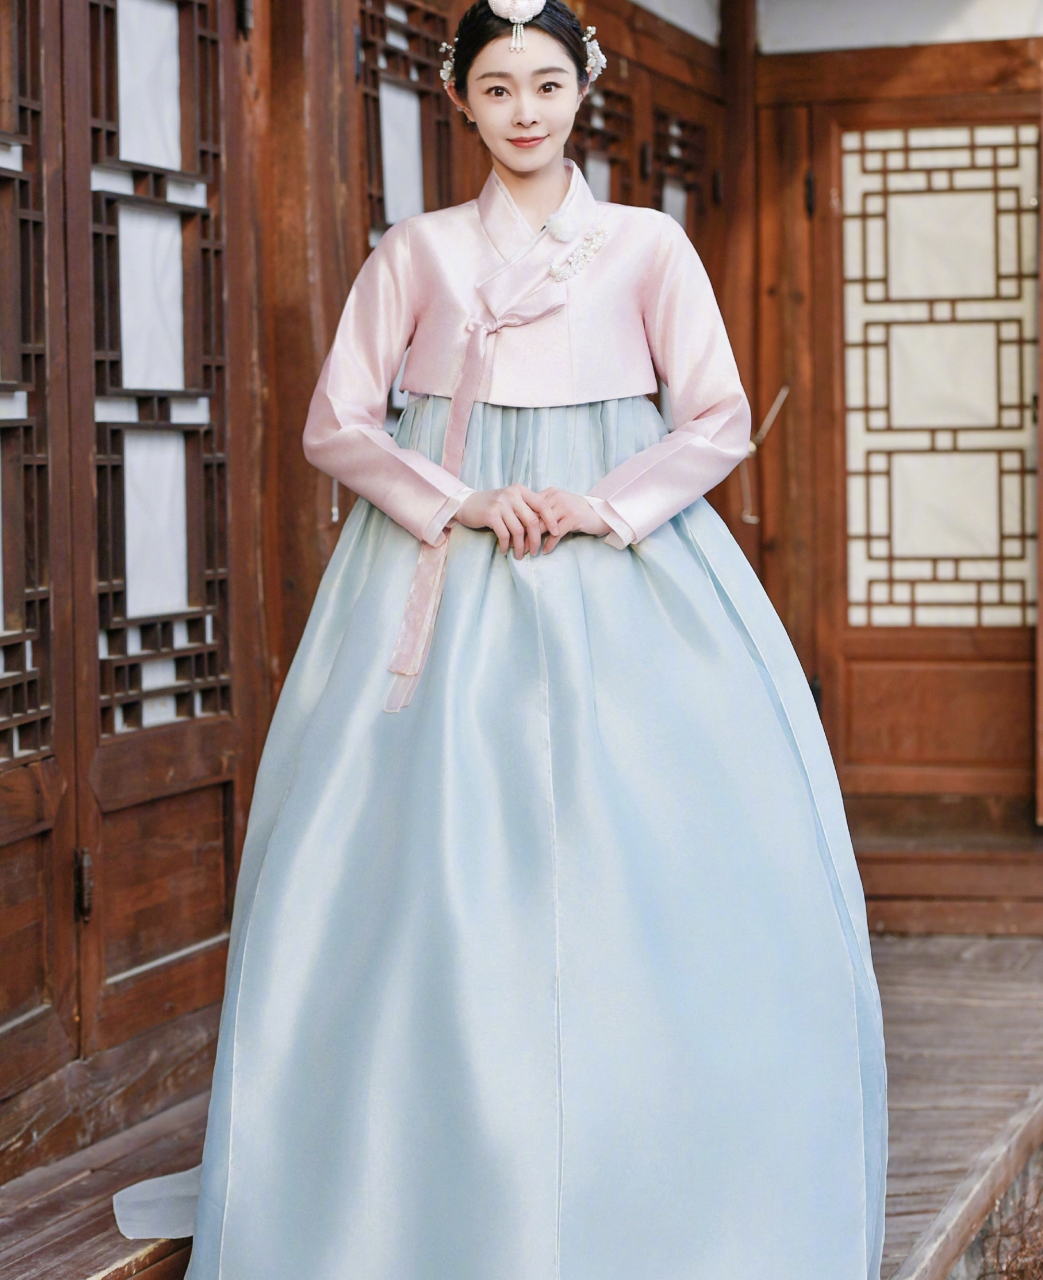 宋轶穿朝鲜族衣服可可爱爱的,好像一位公主